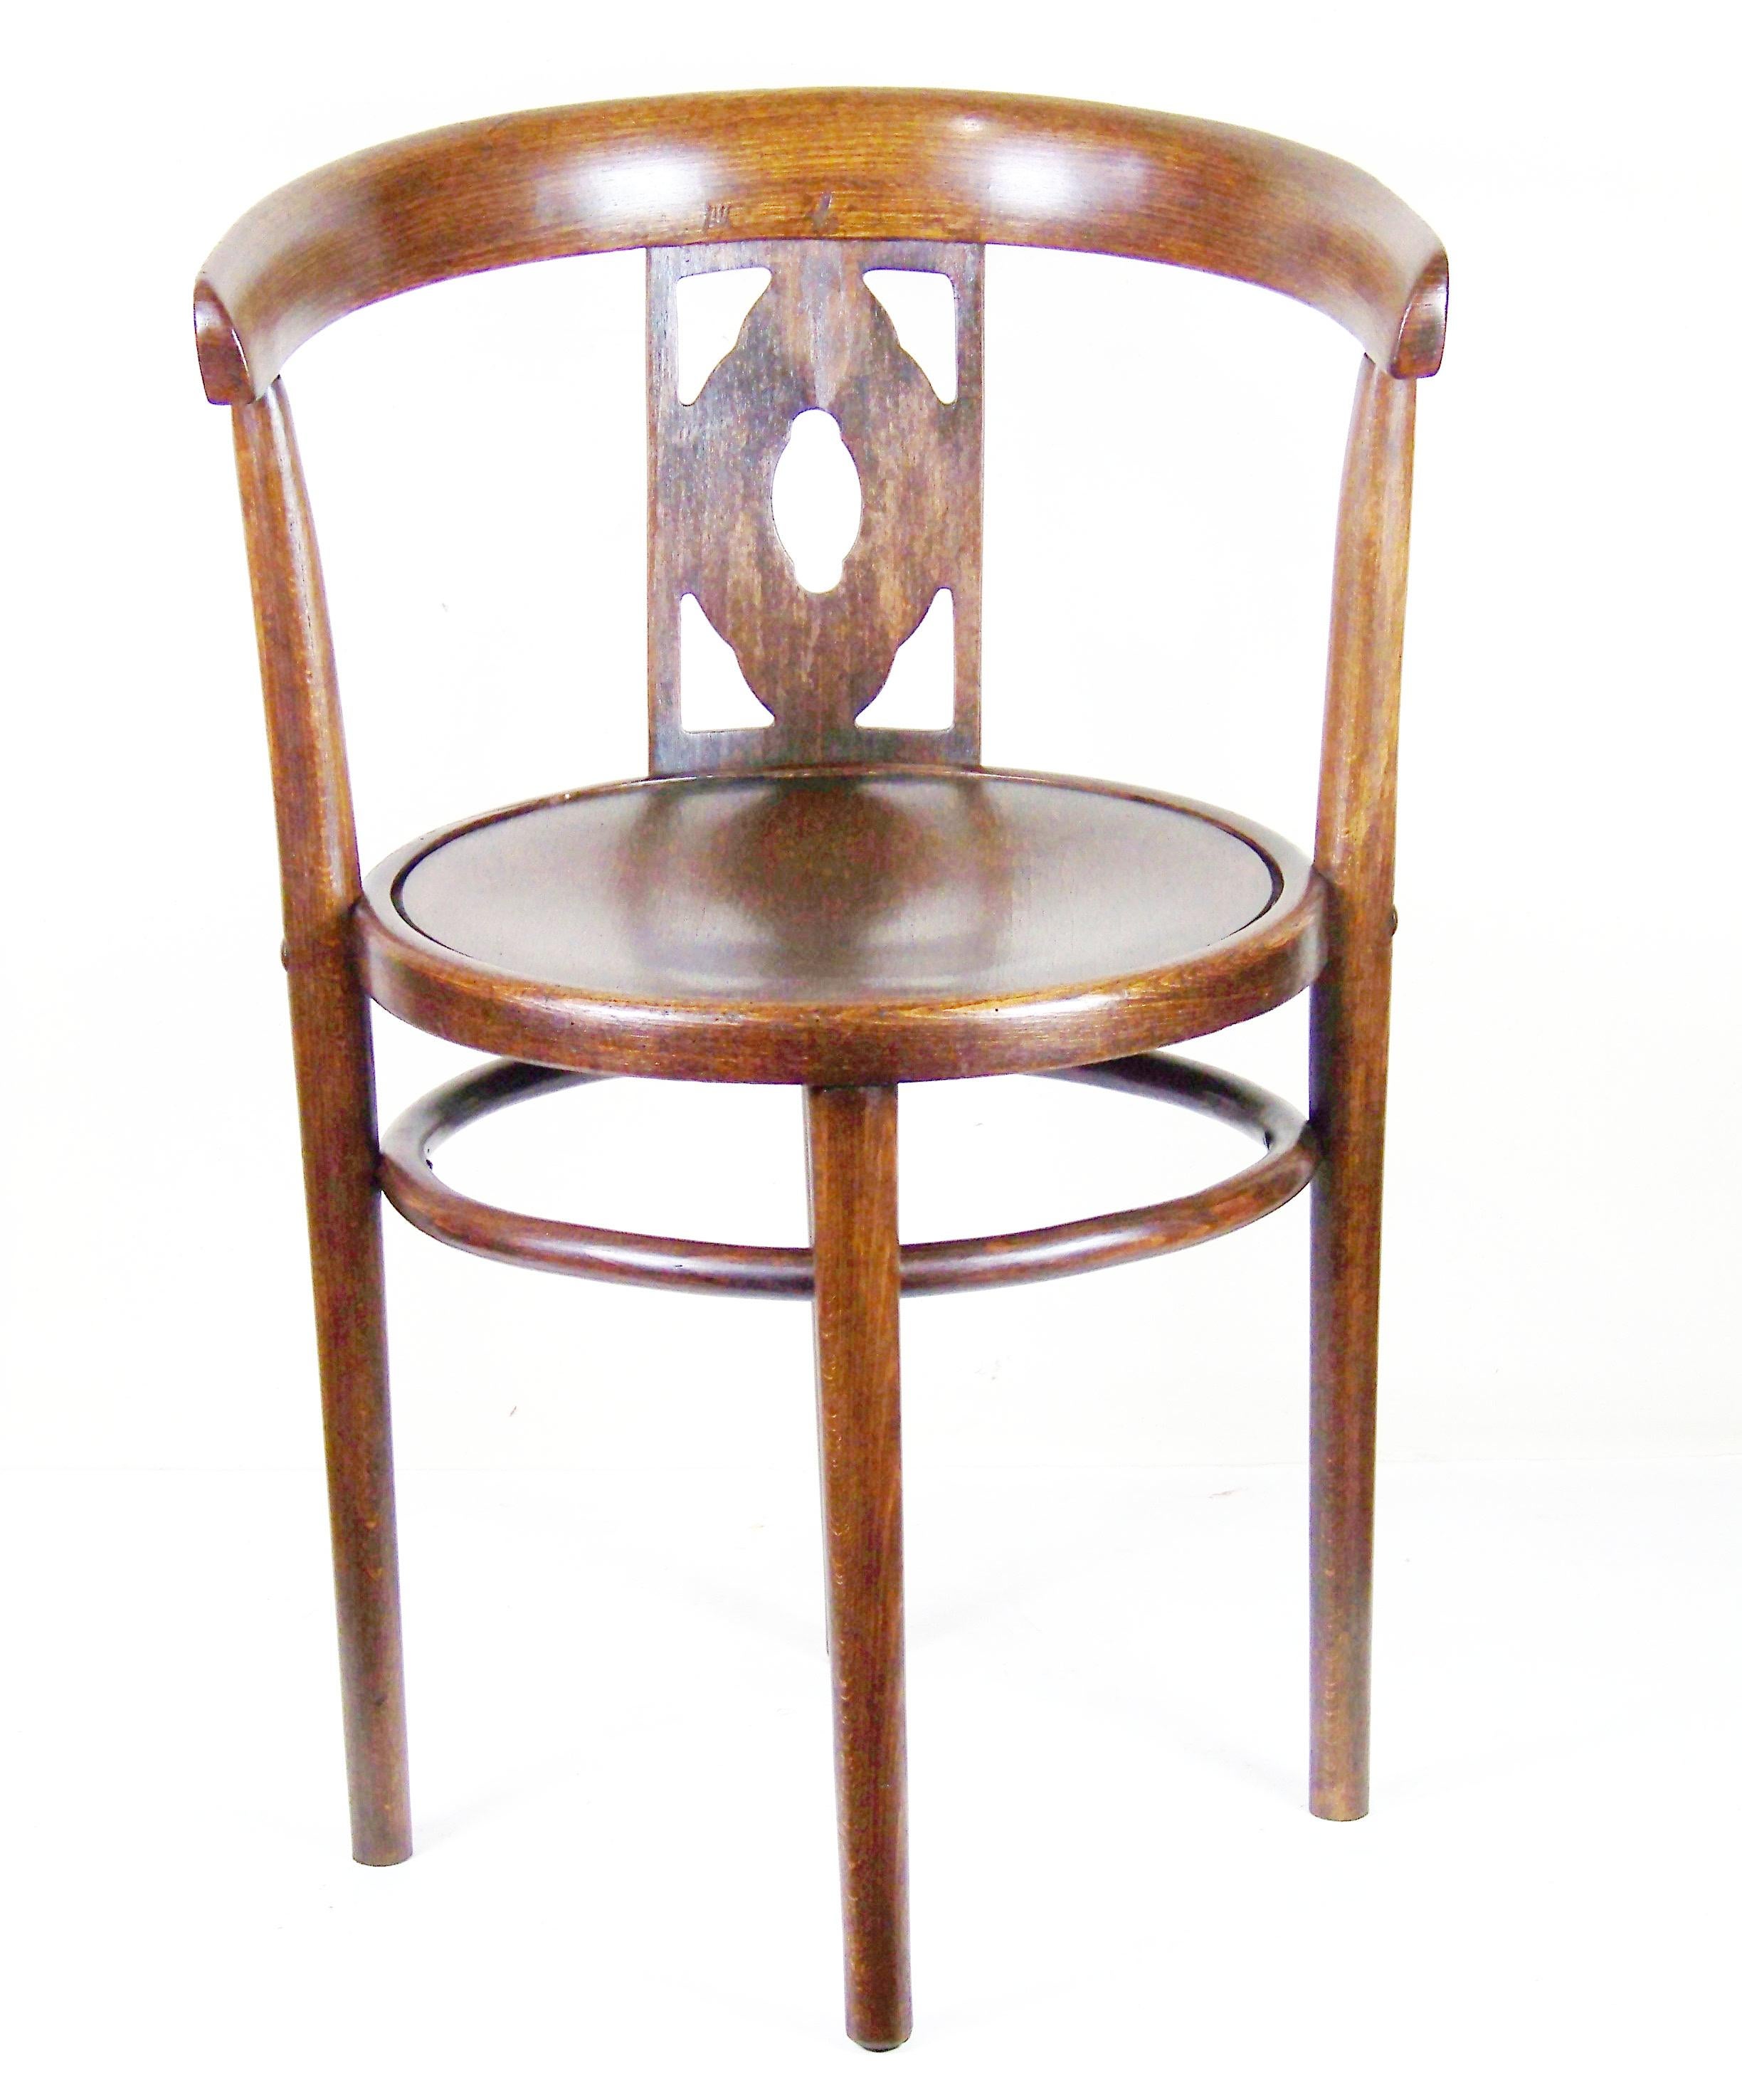 In schönem Originalzustand, perfekt gereinigt und mit Schellack poliert. Der Stuhl hat eine interessante Oberfläche - eine Eichenholzimitation (die durch das Bohren von künstlichen Poren, die Eichenholz imitieren, in Buchenholz und das Beizen in der